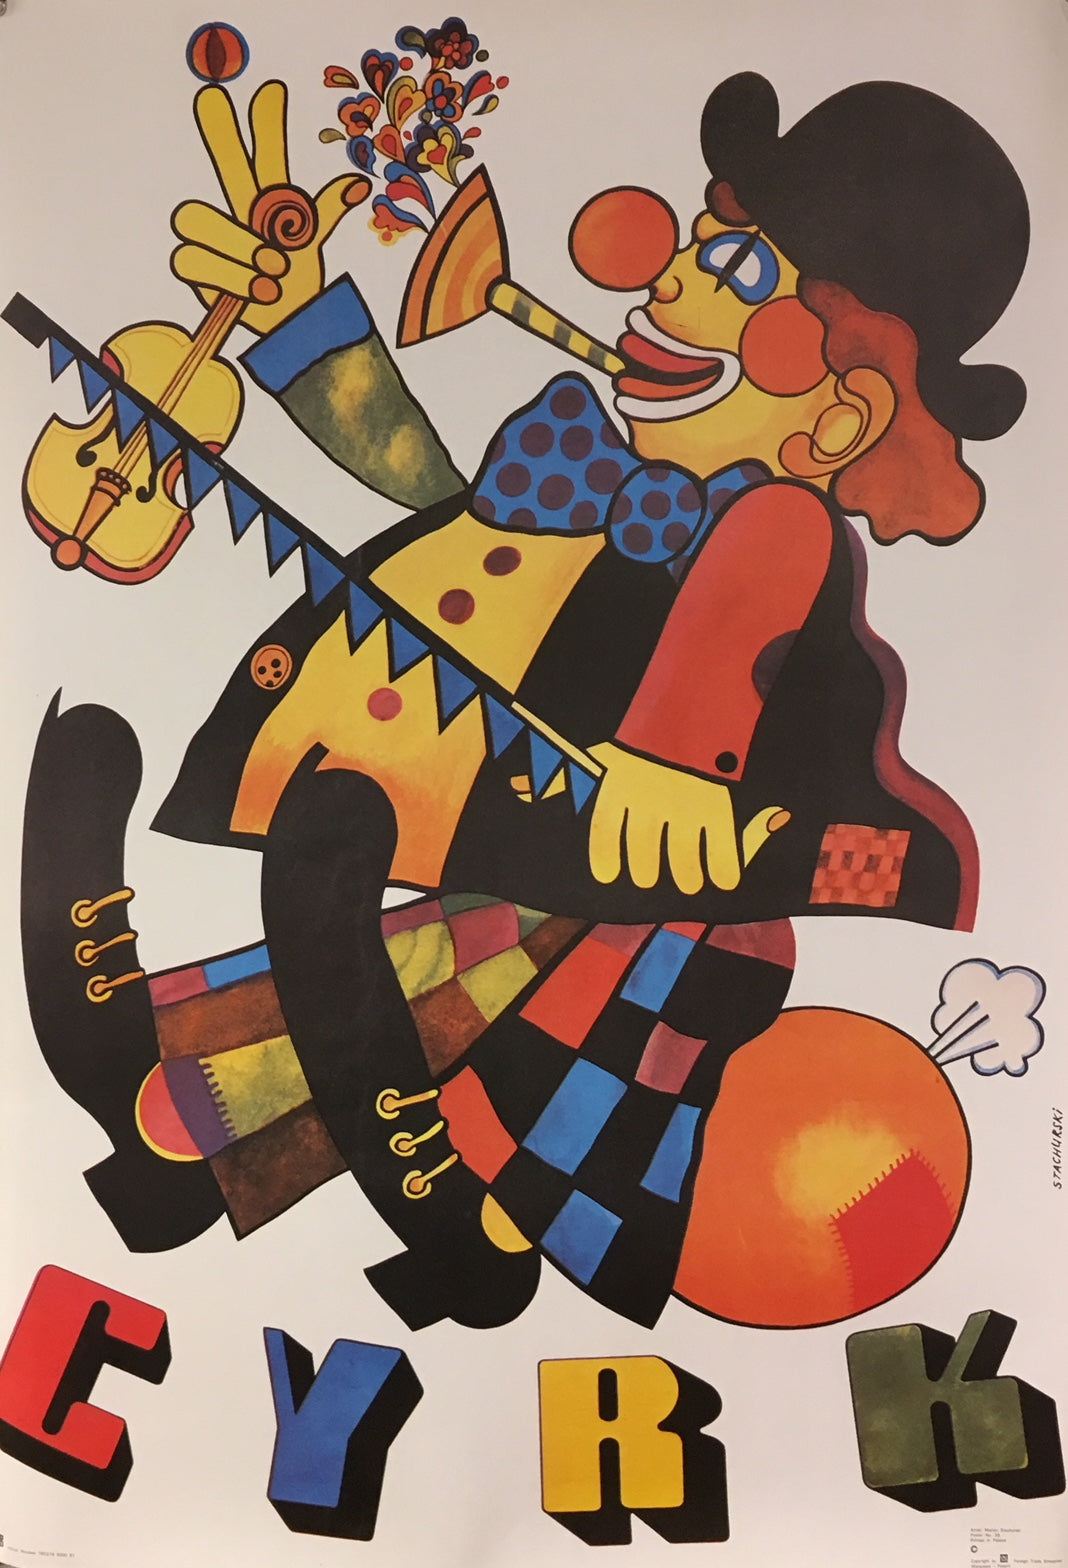 Cyrk - One Man Band Clown